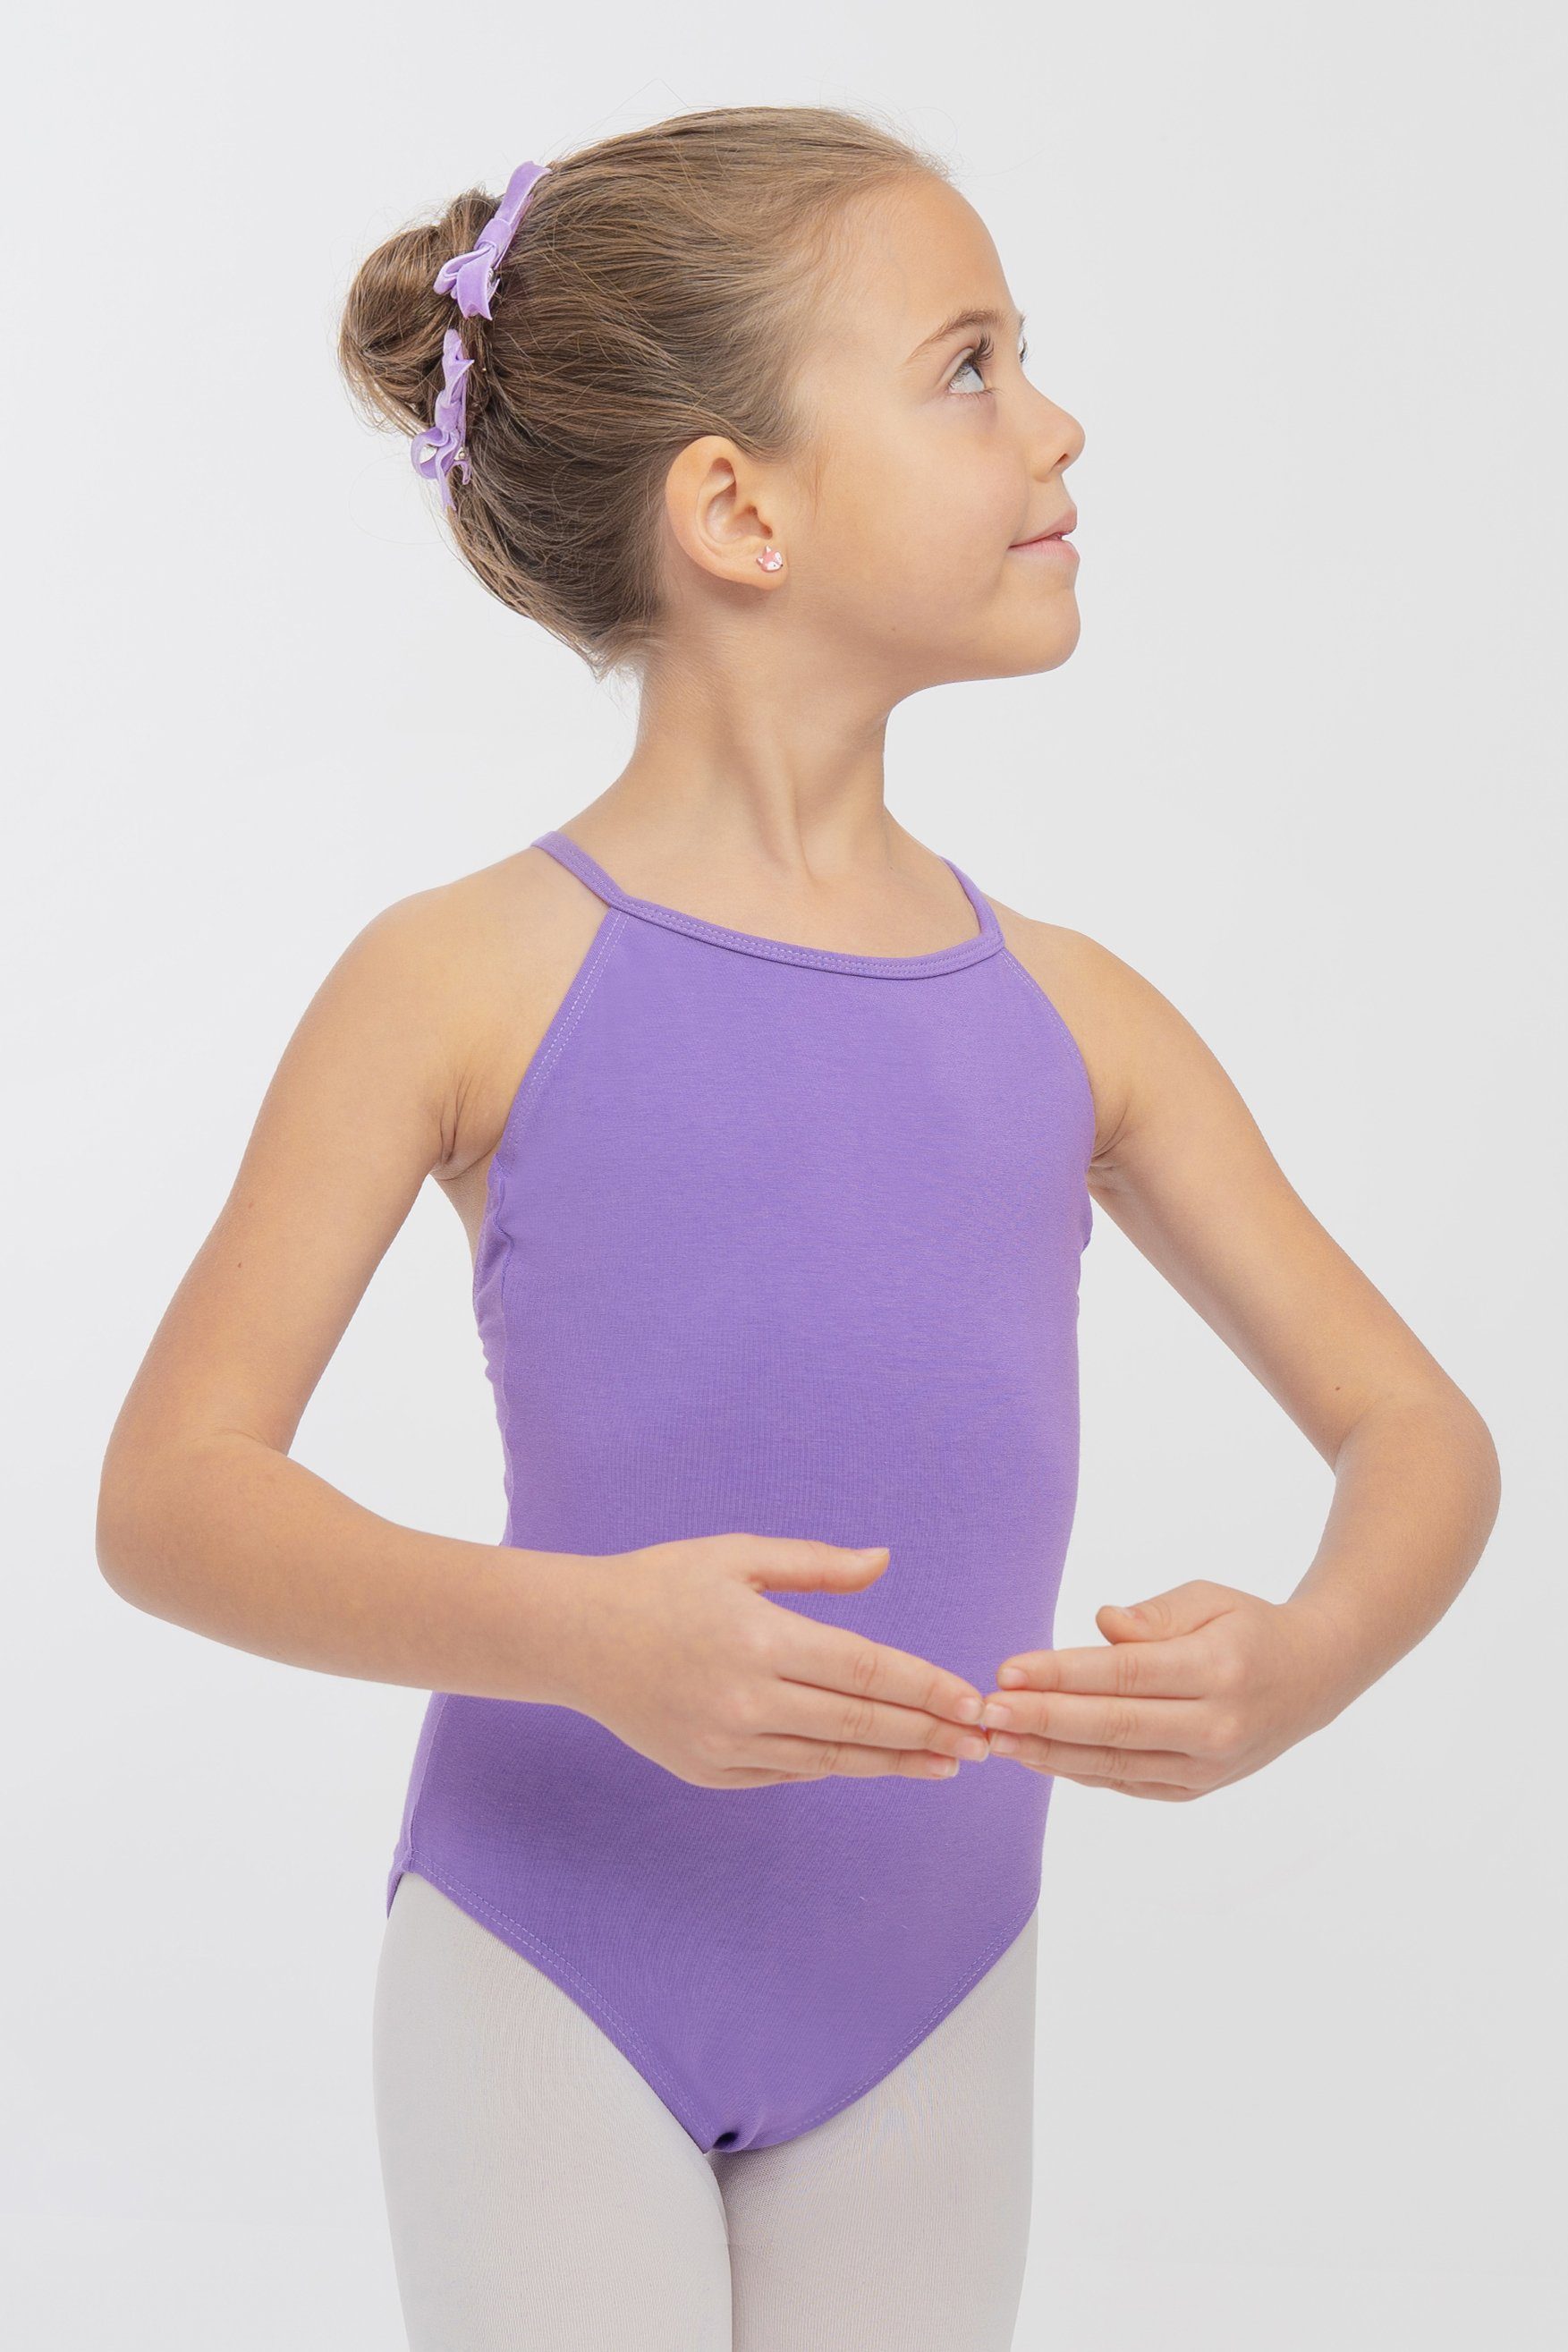 Ballett Ballettbody lavendel Trikot tanzmuster weichem fürs Leonie Baumwollmischgewebe Body Spaghettiträger aus Kinder